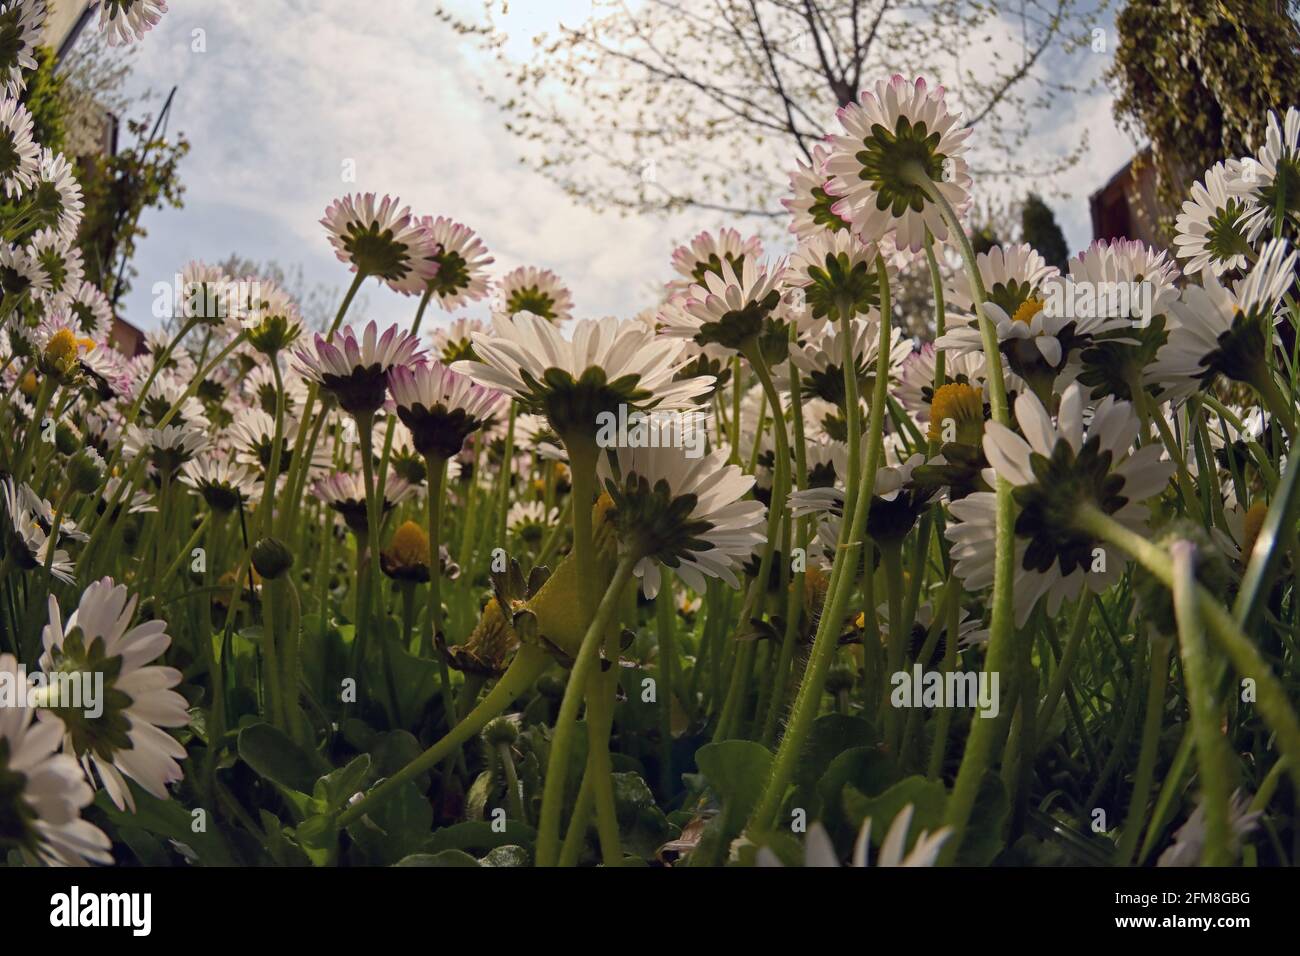 Closeup Annual Daisies (Bellis Annua) In A Meadow Stock Photo